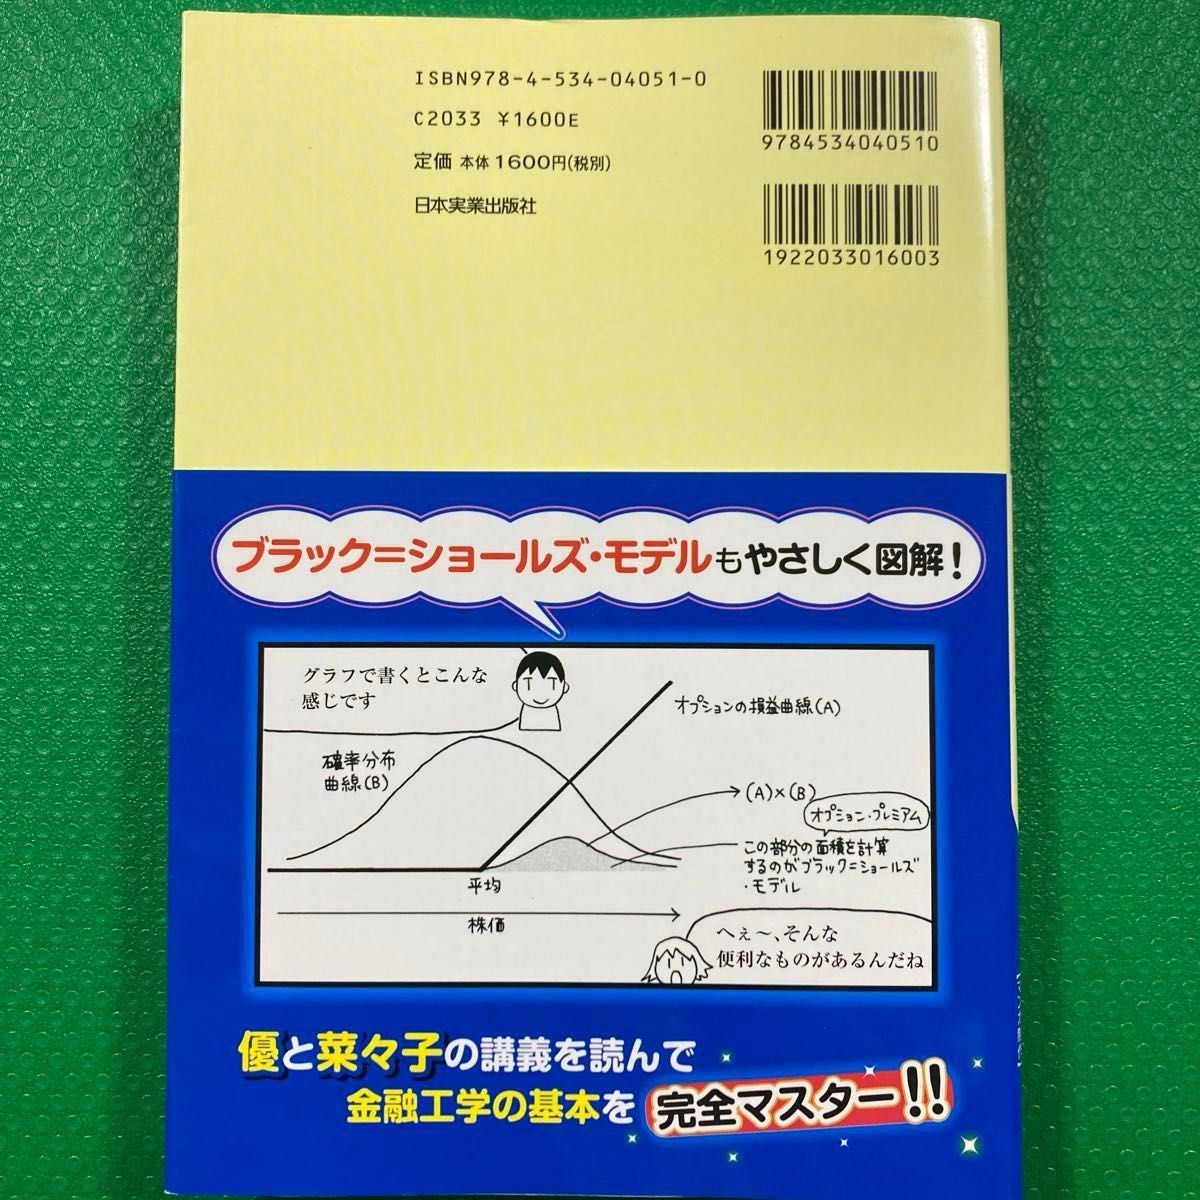 「世界一やさしい金融工学の本です」田渕 直也